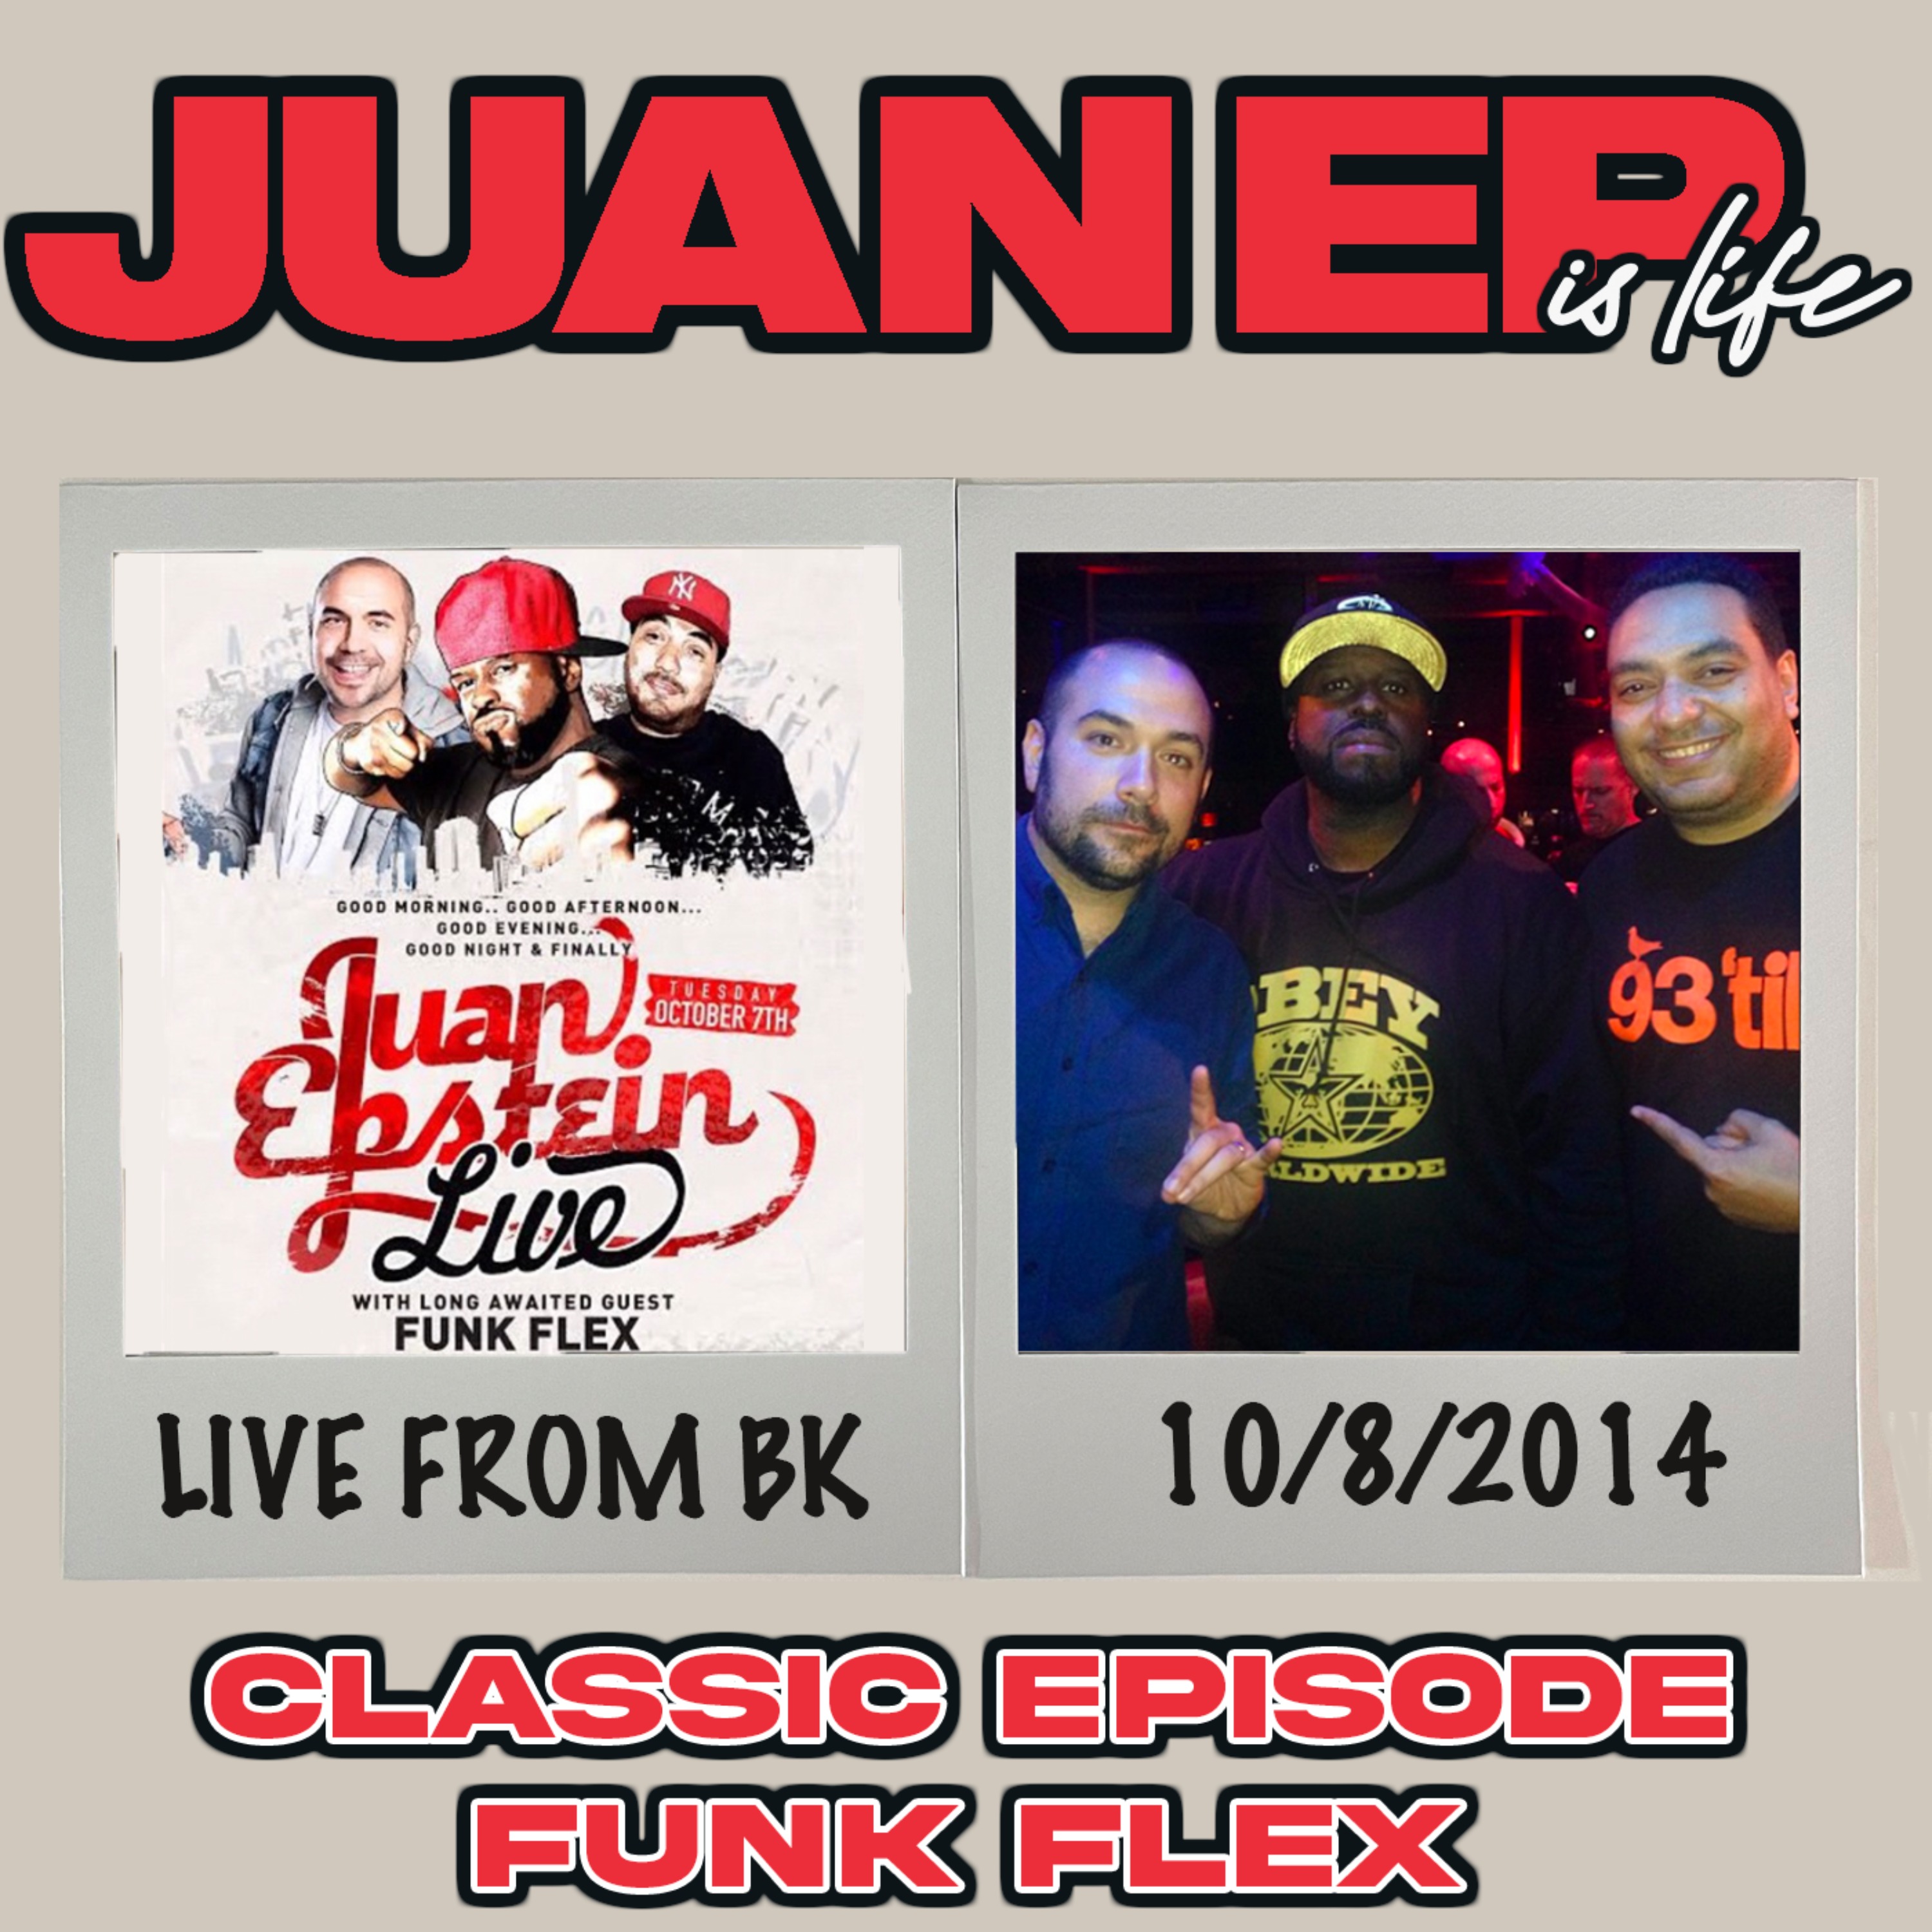 A 2014 Classic Episode w/ Funk Flex